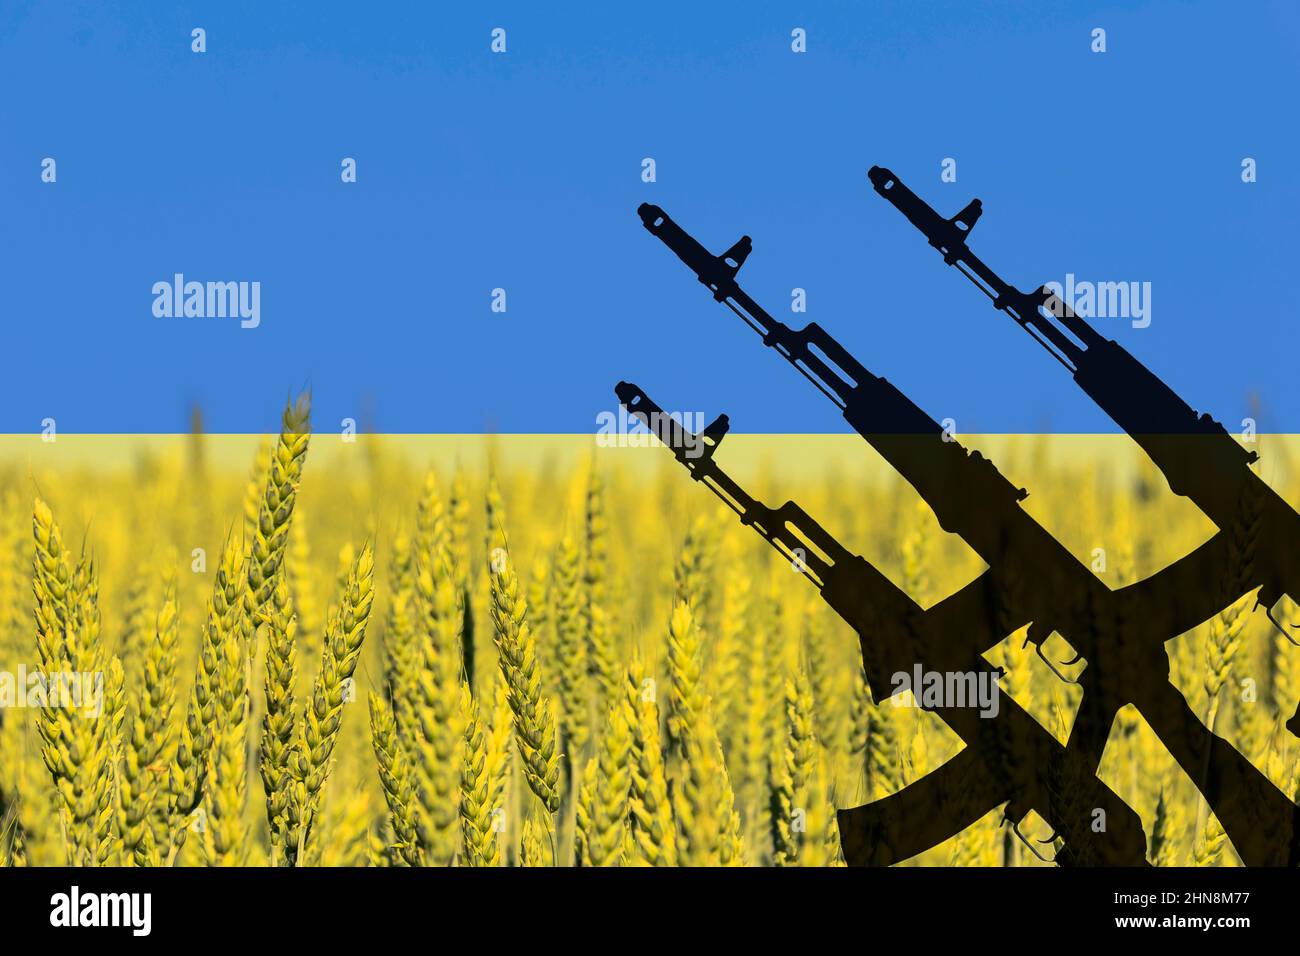 Fond ton du drapeau de l'Ukraine avec la silhouette d'un fusil d'assaut AK-74 Kalashnikov contre un champ de blé avec le ciel Banque D'Images